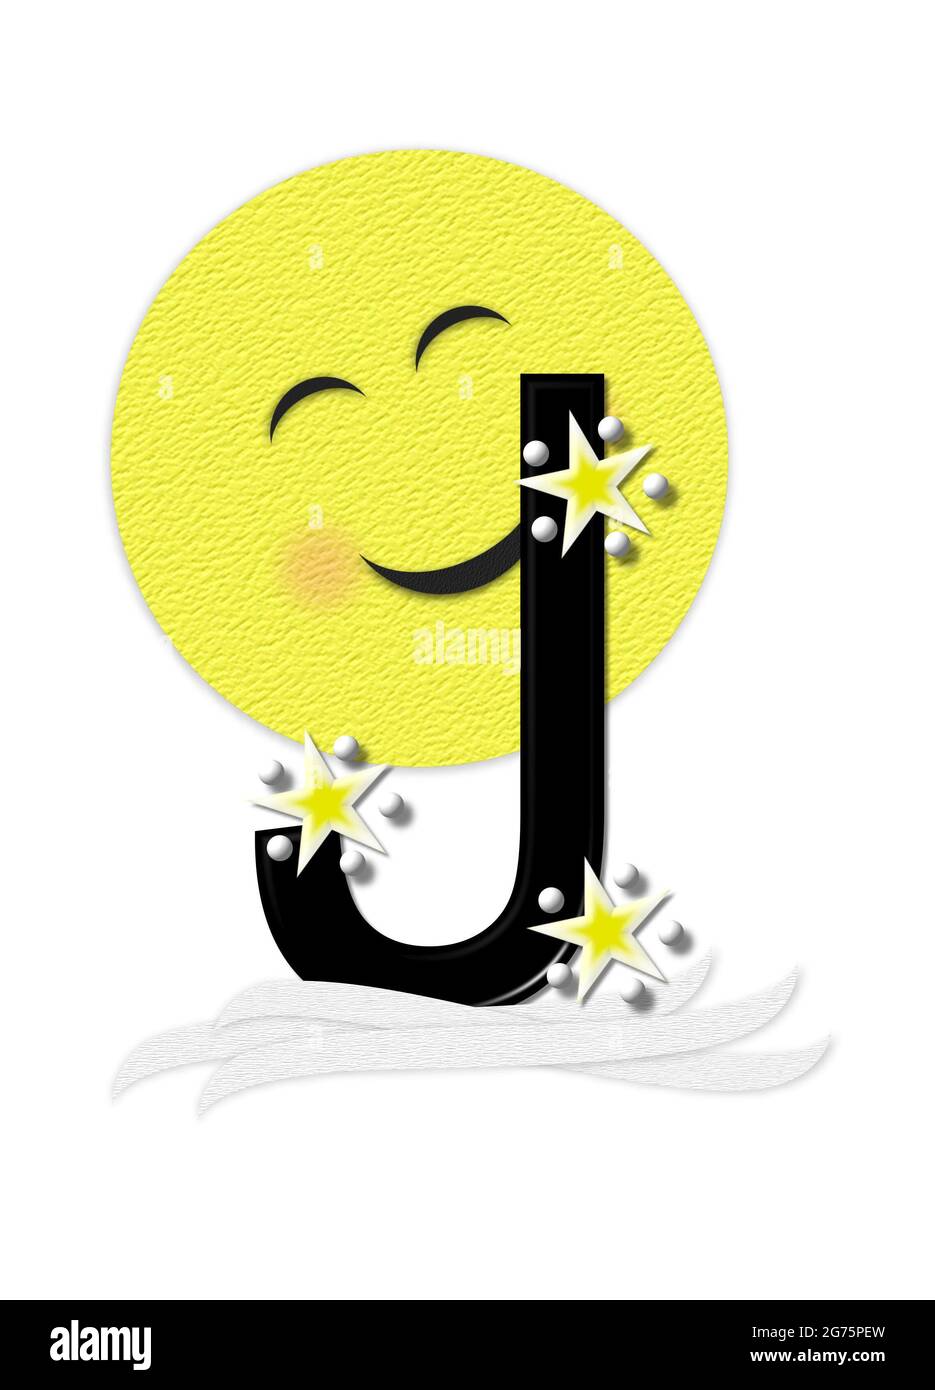 La lettera J, nell'insieme alfabetico 'Moon Beam' è in 3D e nera. Stelle e pois di polka decorano la lettera. Un fascio di luna sorridente sbirra intorno alla lettera. Foto Stock